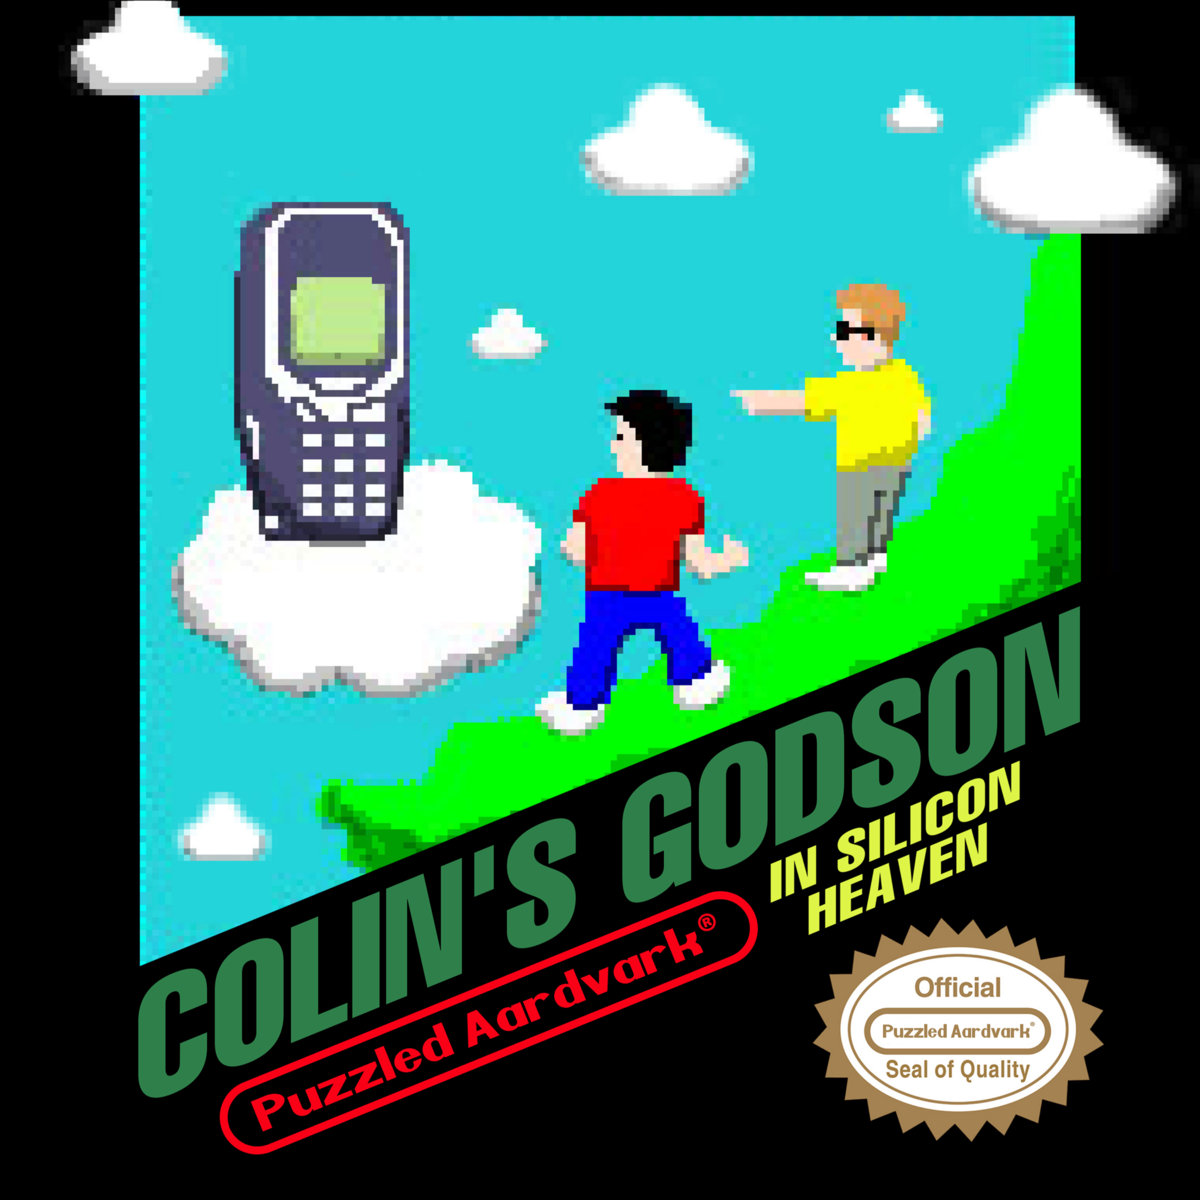 Colin's Godson — In Silicon Heaven